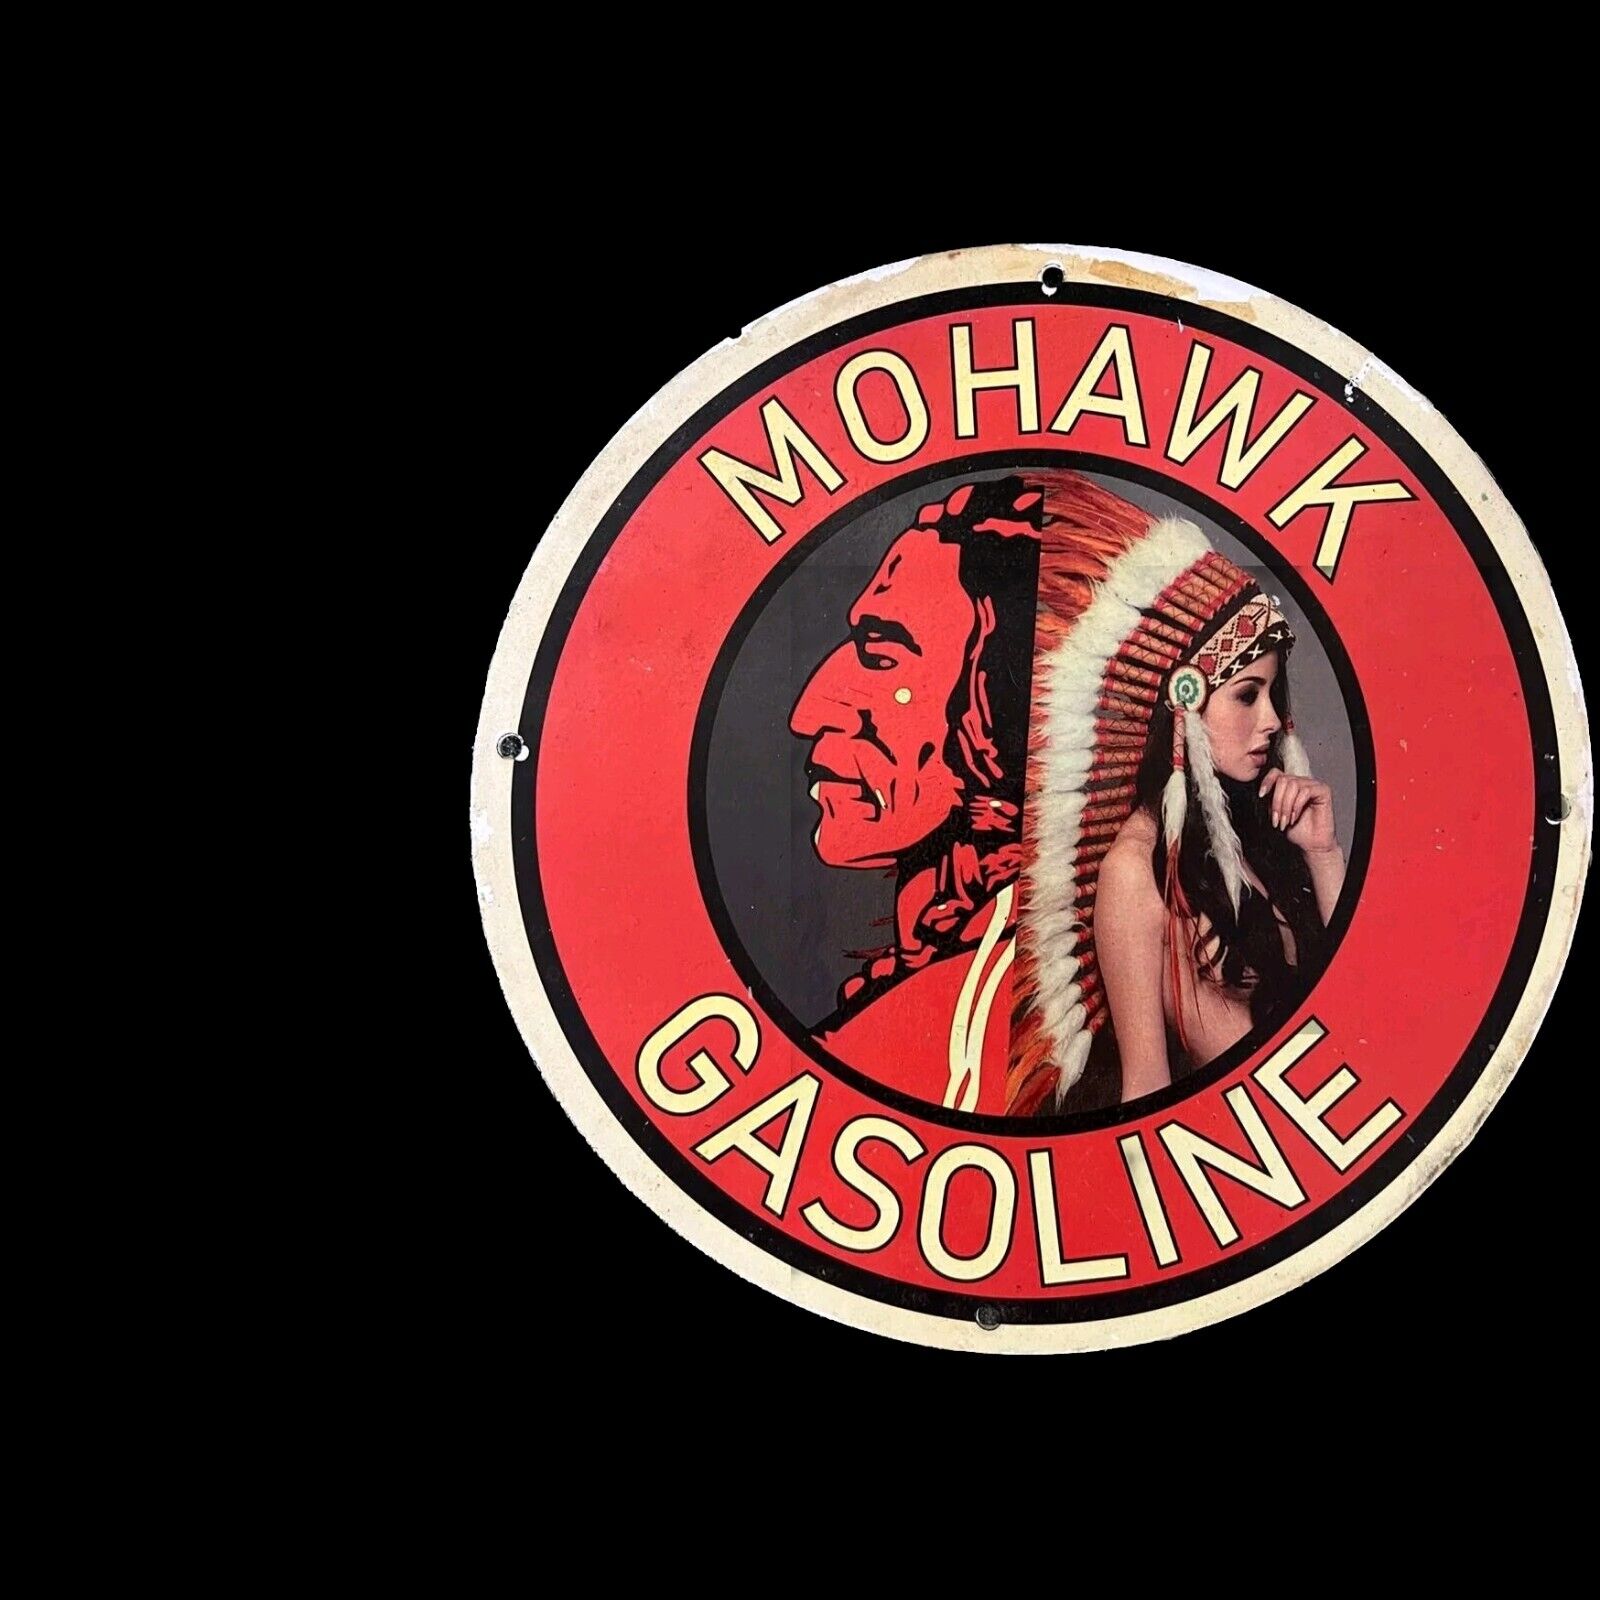 MOHAWK GASOLINE NUDE GIRL PORCELAIN ENAMEL GAS OIL GARAGE MOTOR SERVICE SIGN